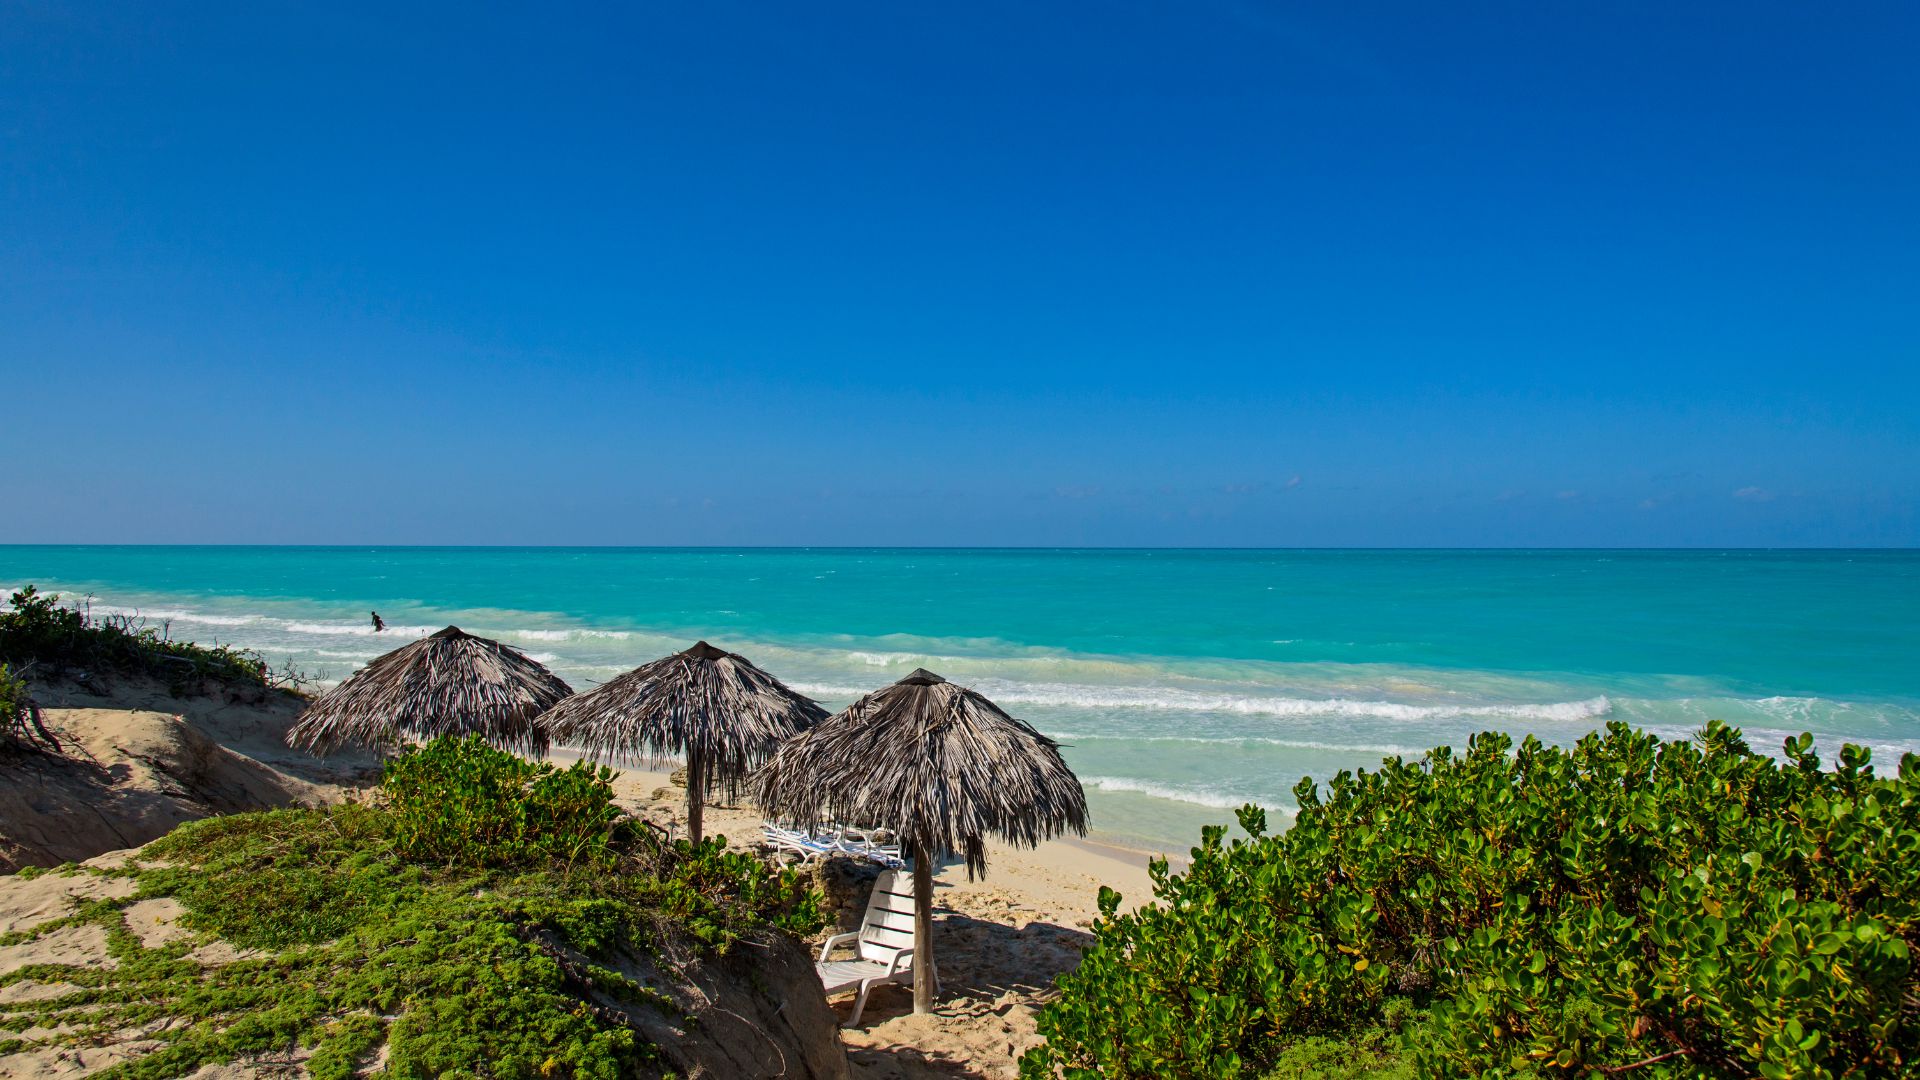 ¡CUBA: Trinidad + Cayo Santa María! Hoteles 4* con TODO INCLUIDO. ¡Incluye Vuelos + Traslados + Seguro de viaje!